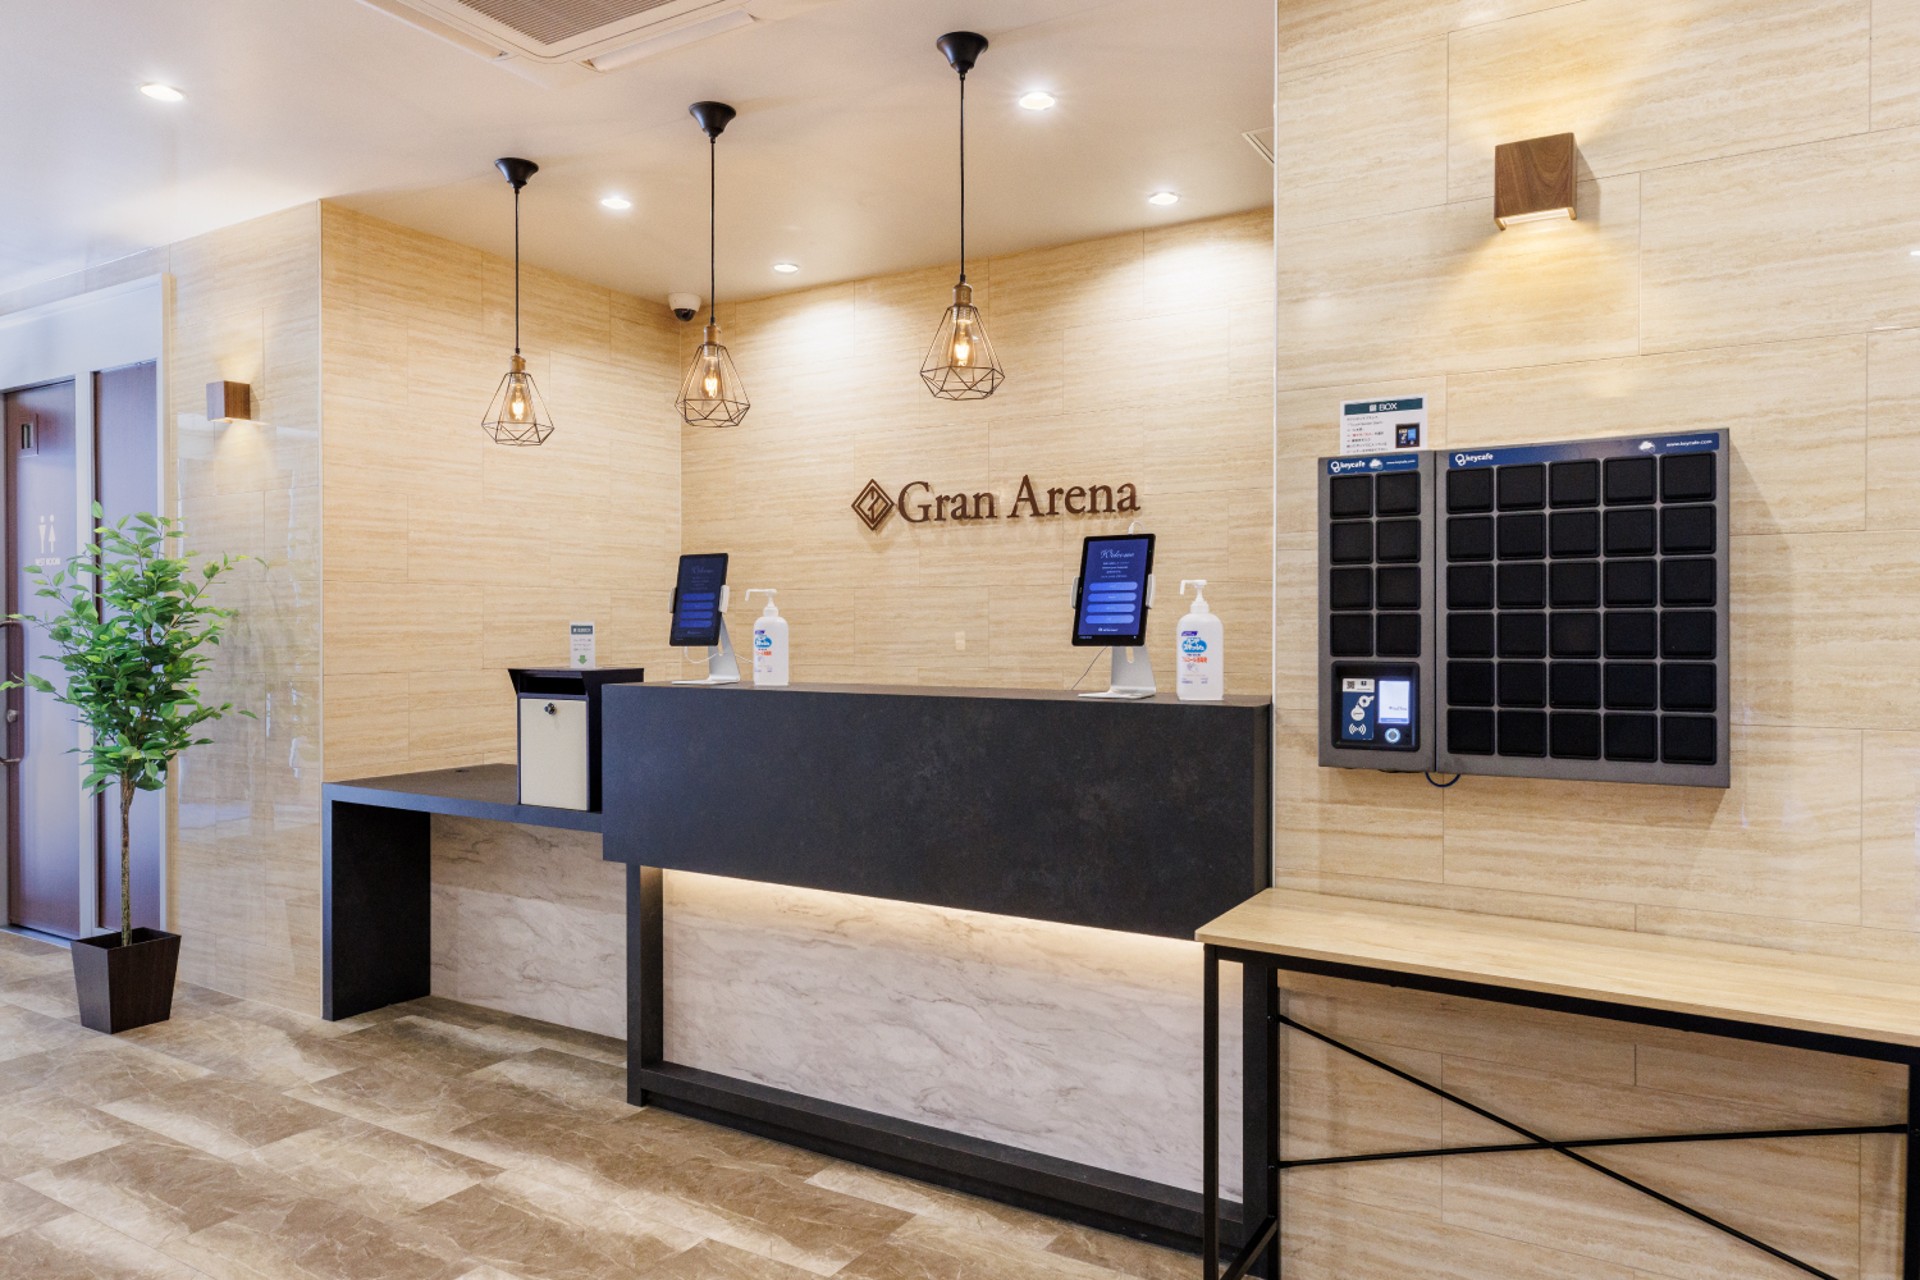 Hotel Gran Arena riduce i costi e aumenta la soddisfazione degli ospiti con Keycafe